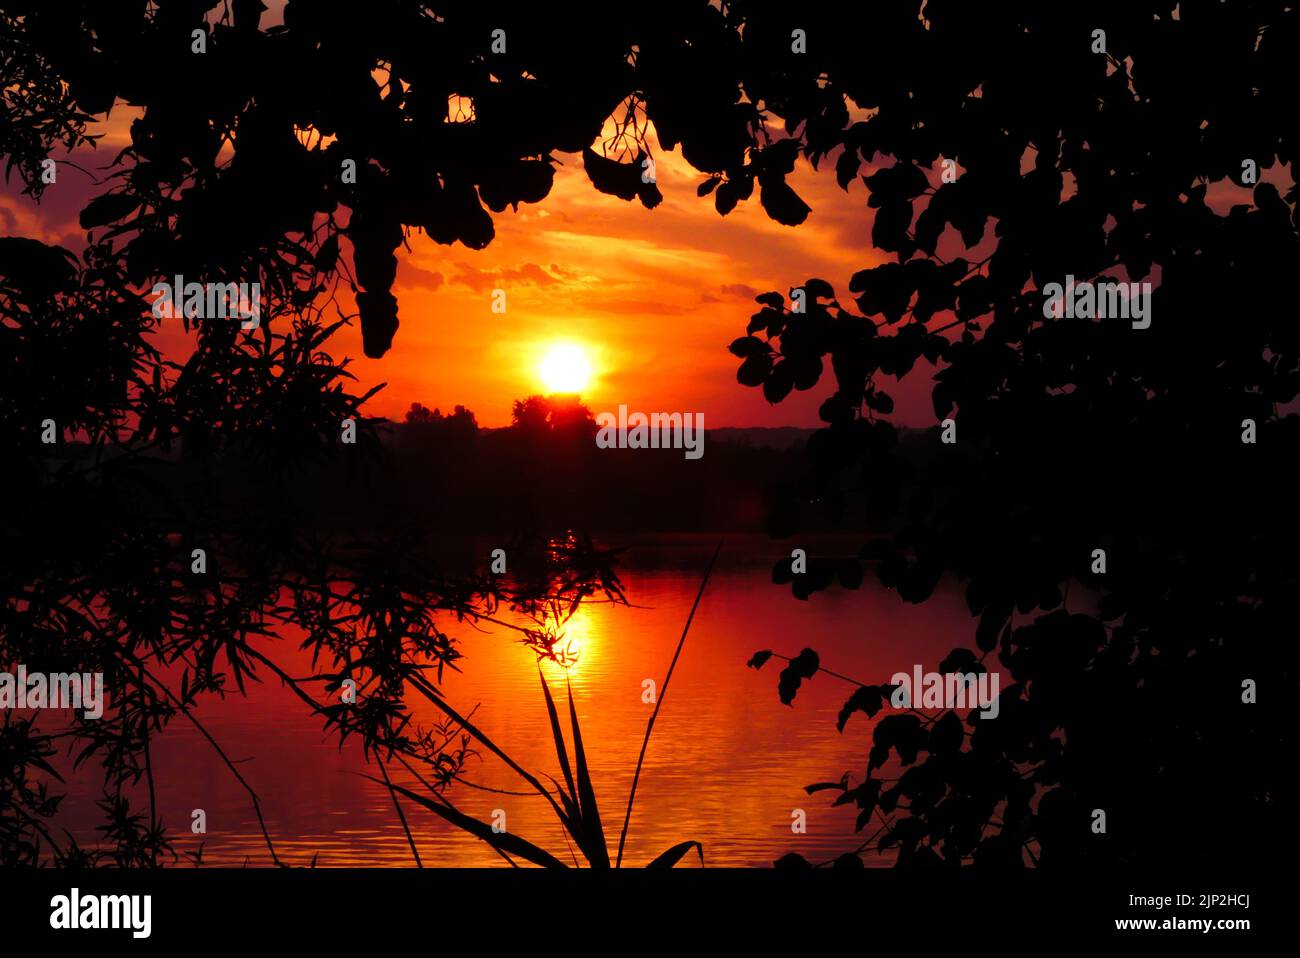 Incredibile alba o tramonto nella scena rurale. Luce del sole sull'acqua di un lago. Cielo suggestivo con silhouette di vegetazione in primo piano. Foto Stock